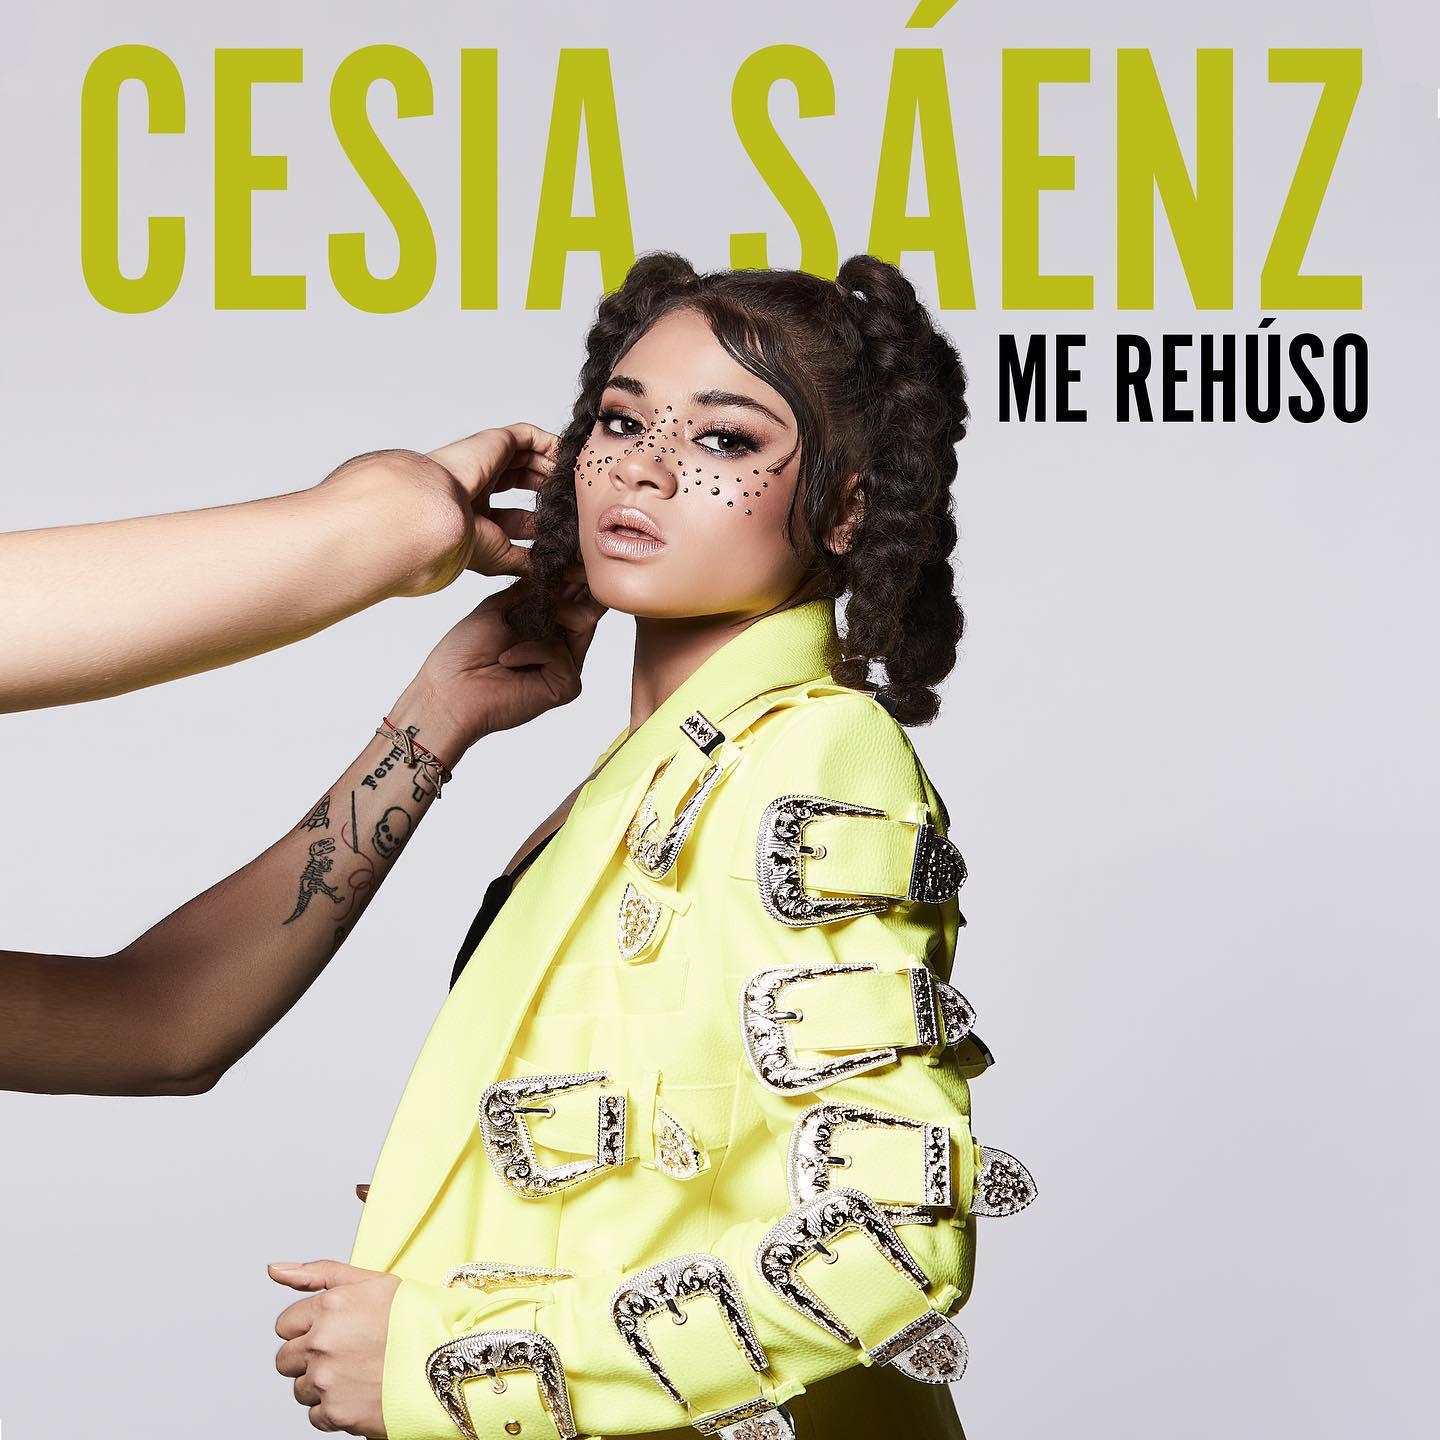 La joven hondureña presumió en redes sociales la portada del que será su primer sencillo con Sony Music México.